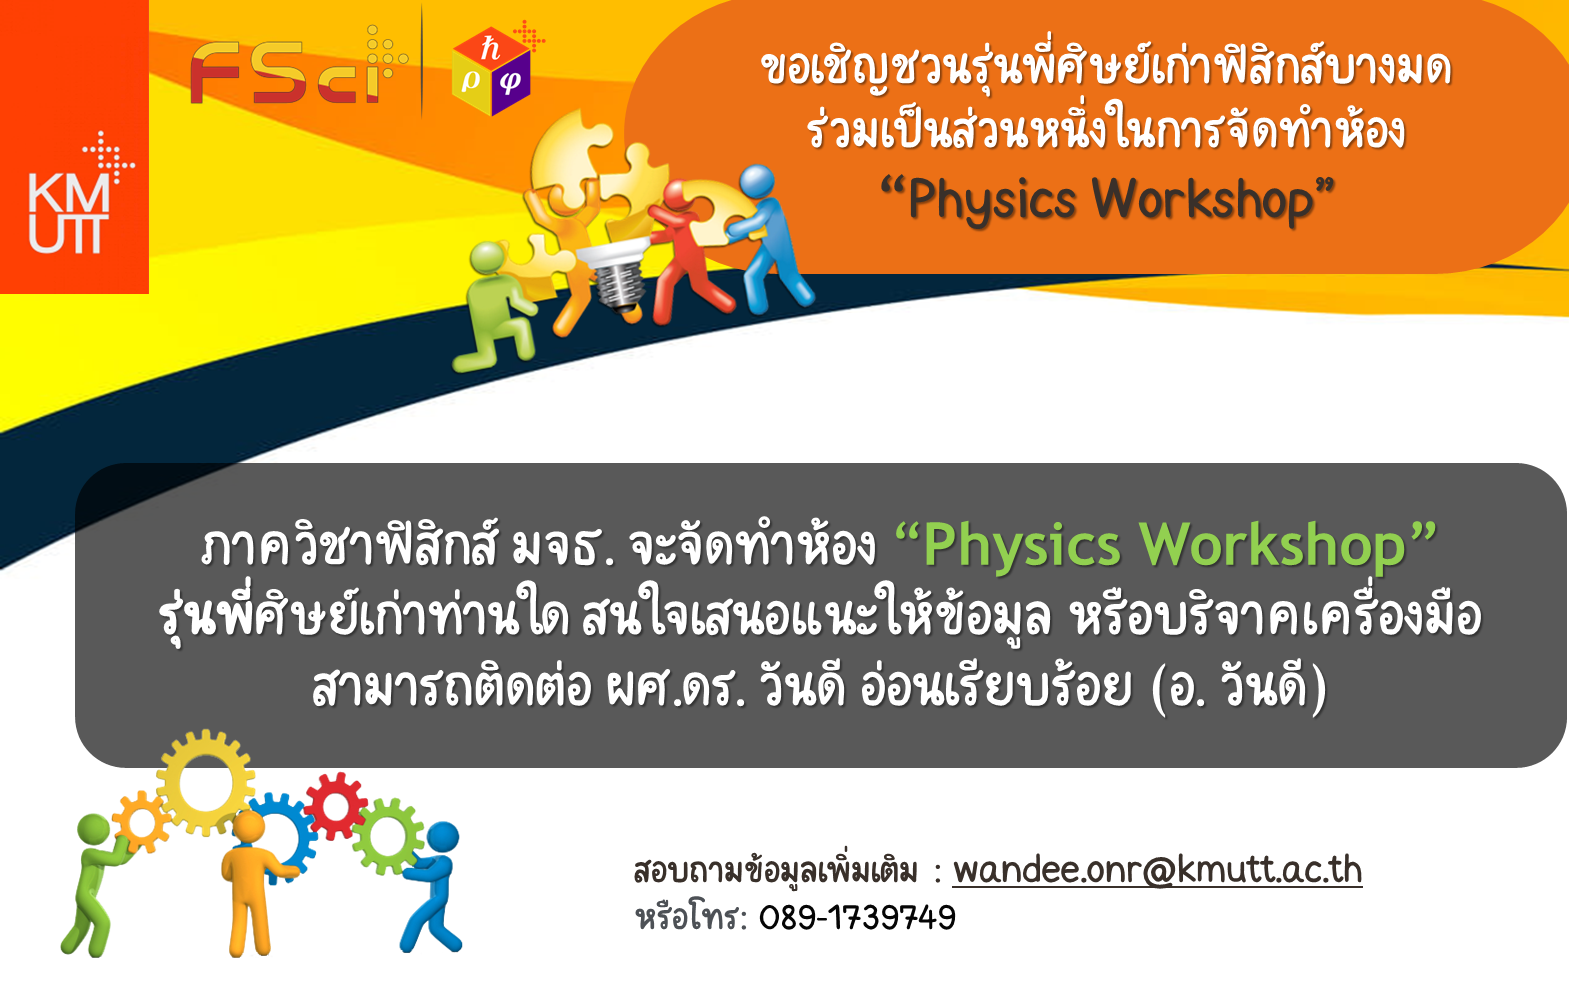  ขอเชิญชวนรุ่นพี่ศิษย์เก่าฟิสิกส์บางมด ร่วมเป็นส่วนหนึ่งในการจัดทำห้อง “Physics Workshop”